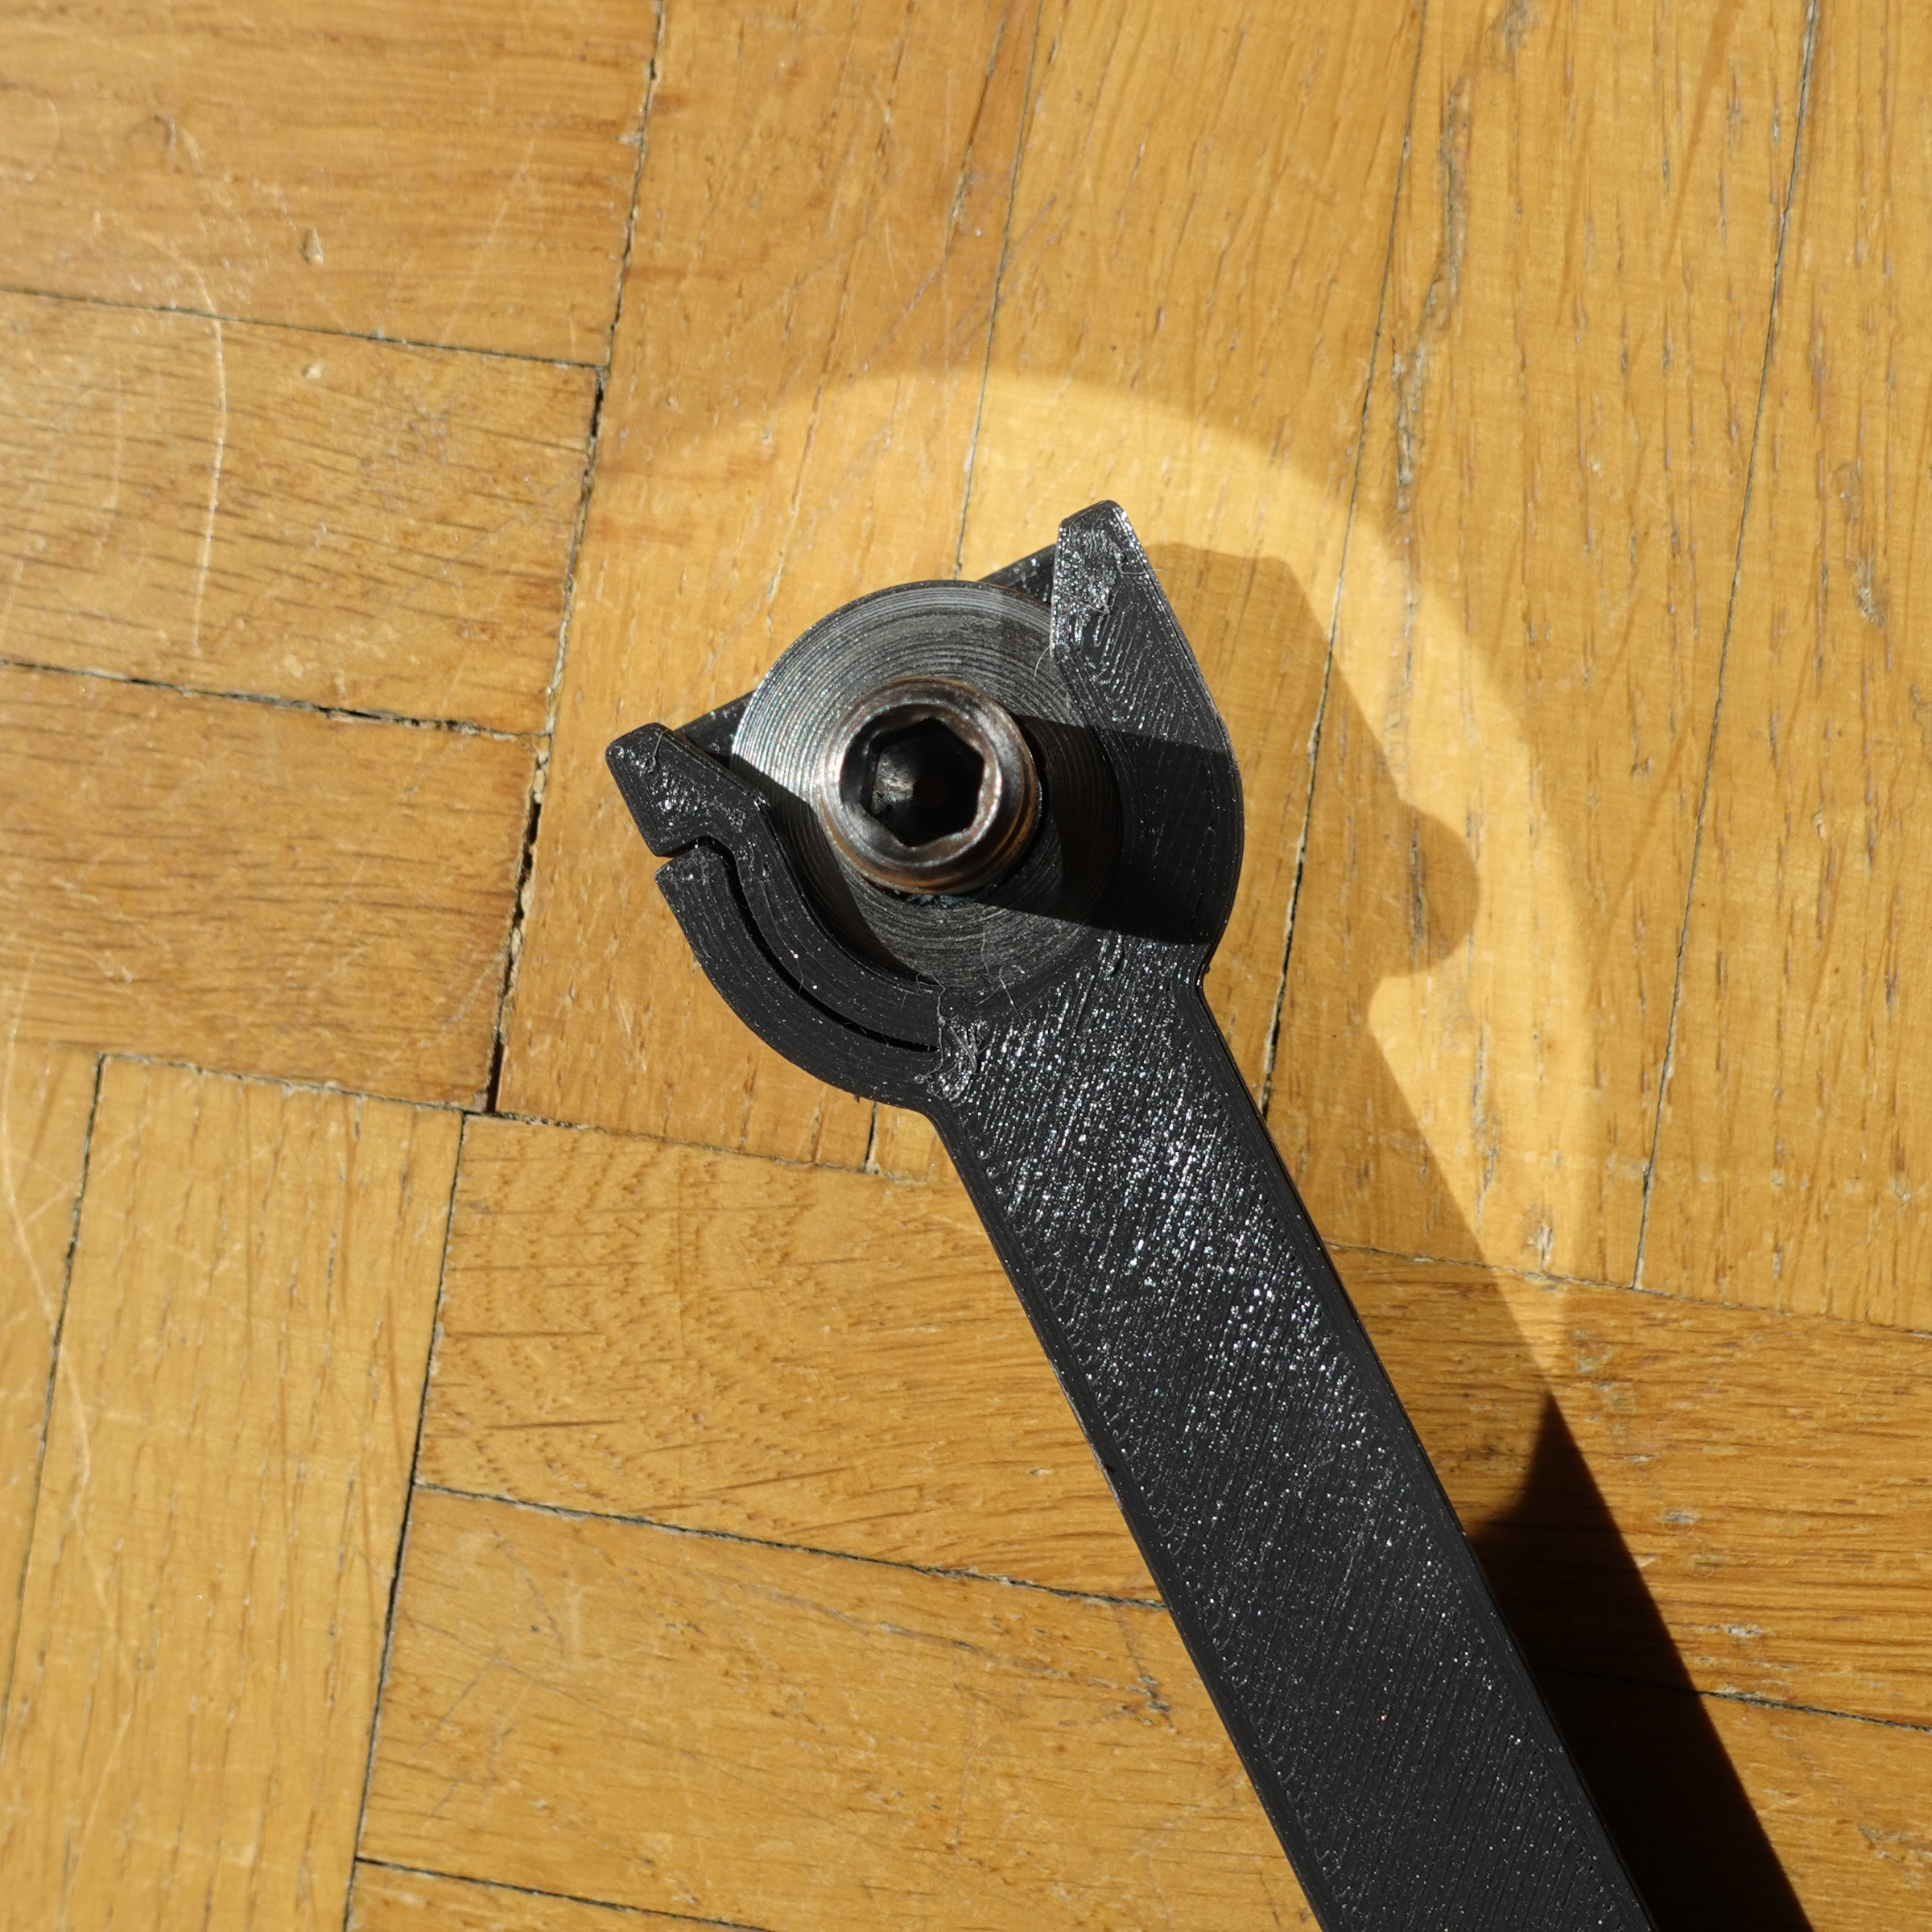 axle screw holder - a velomobile tool